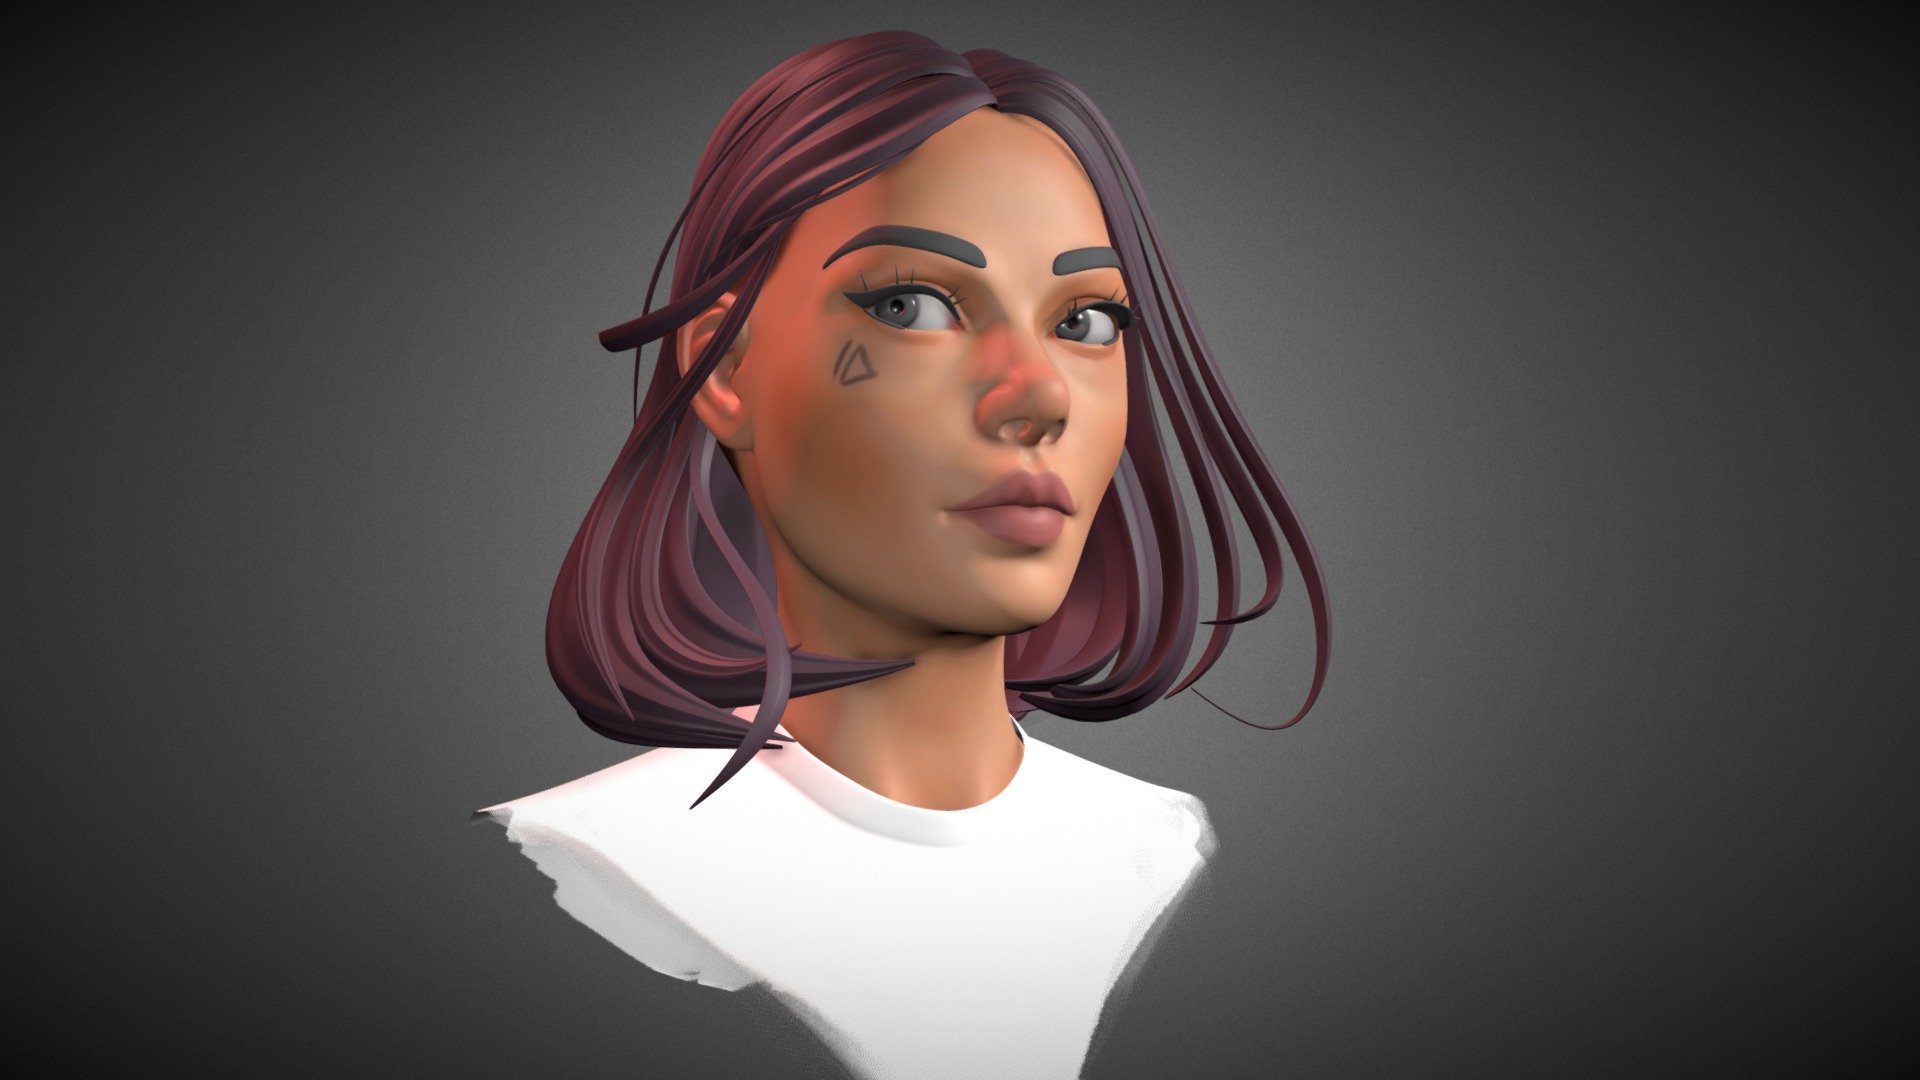 Some girl's portrait 3d model